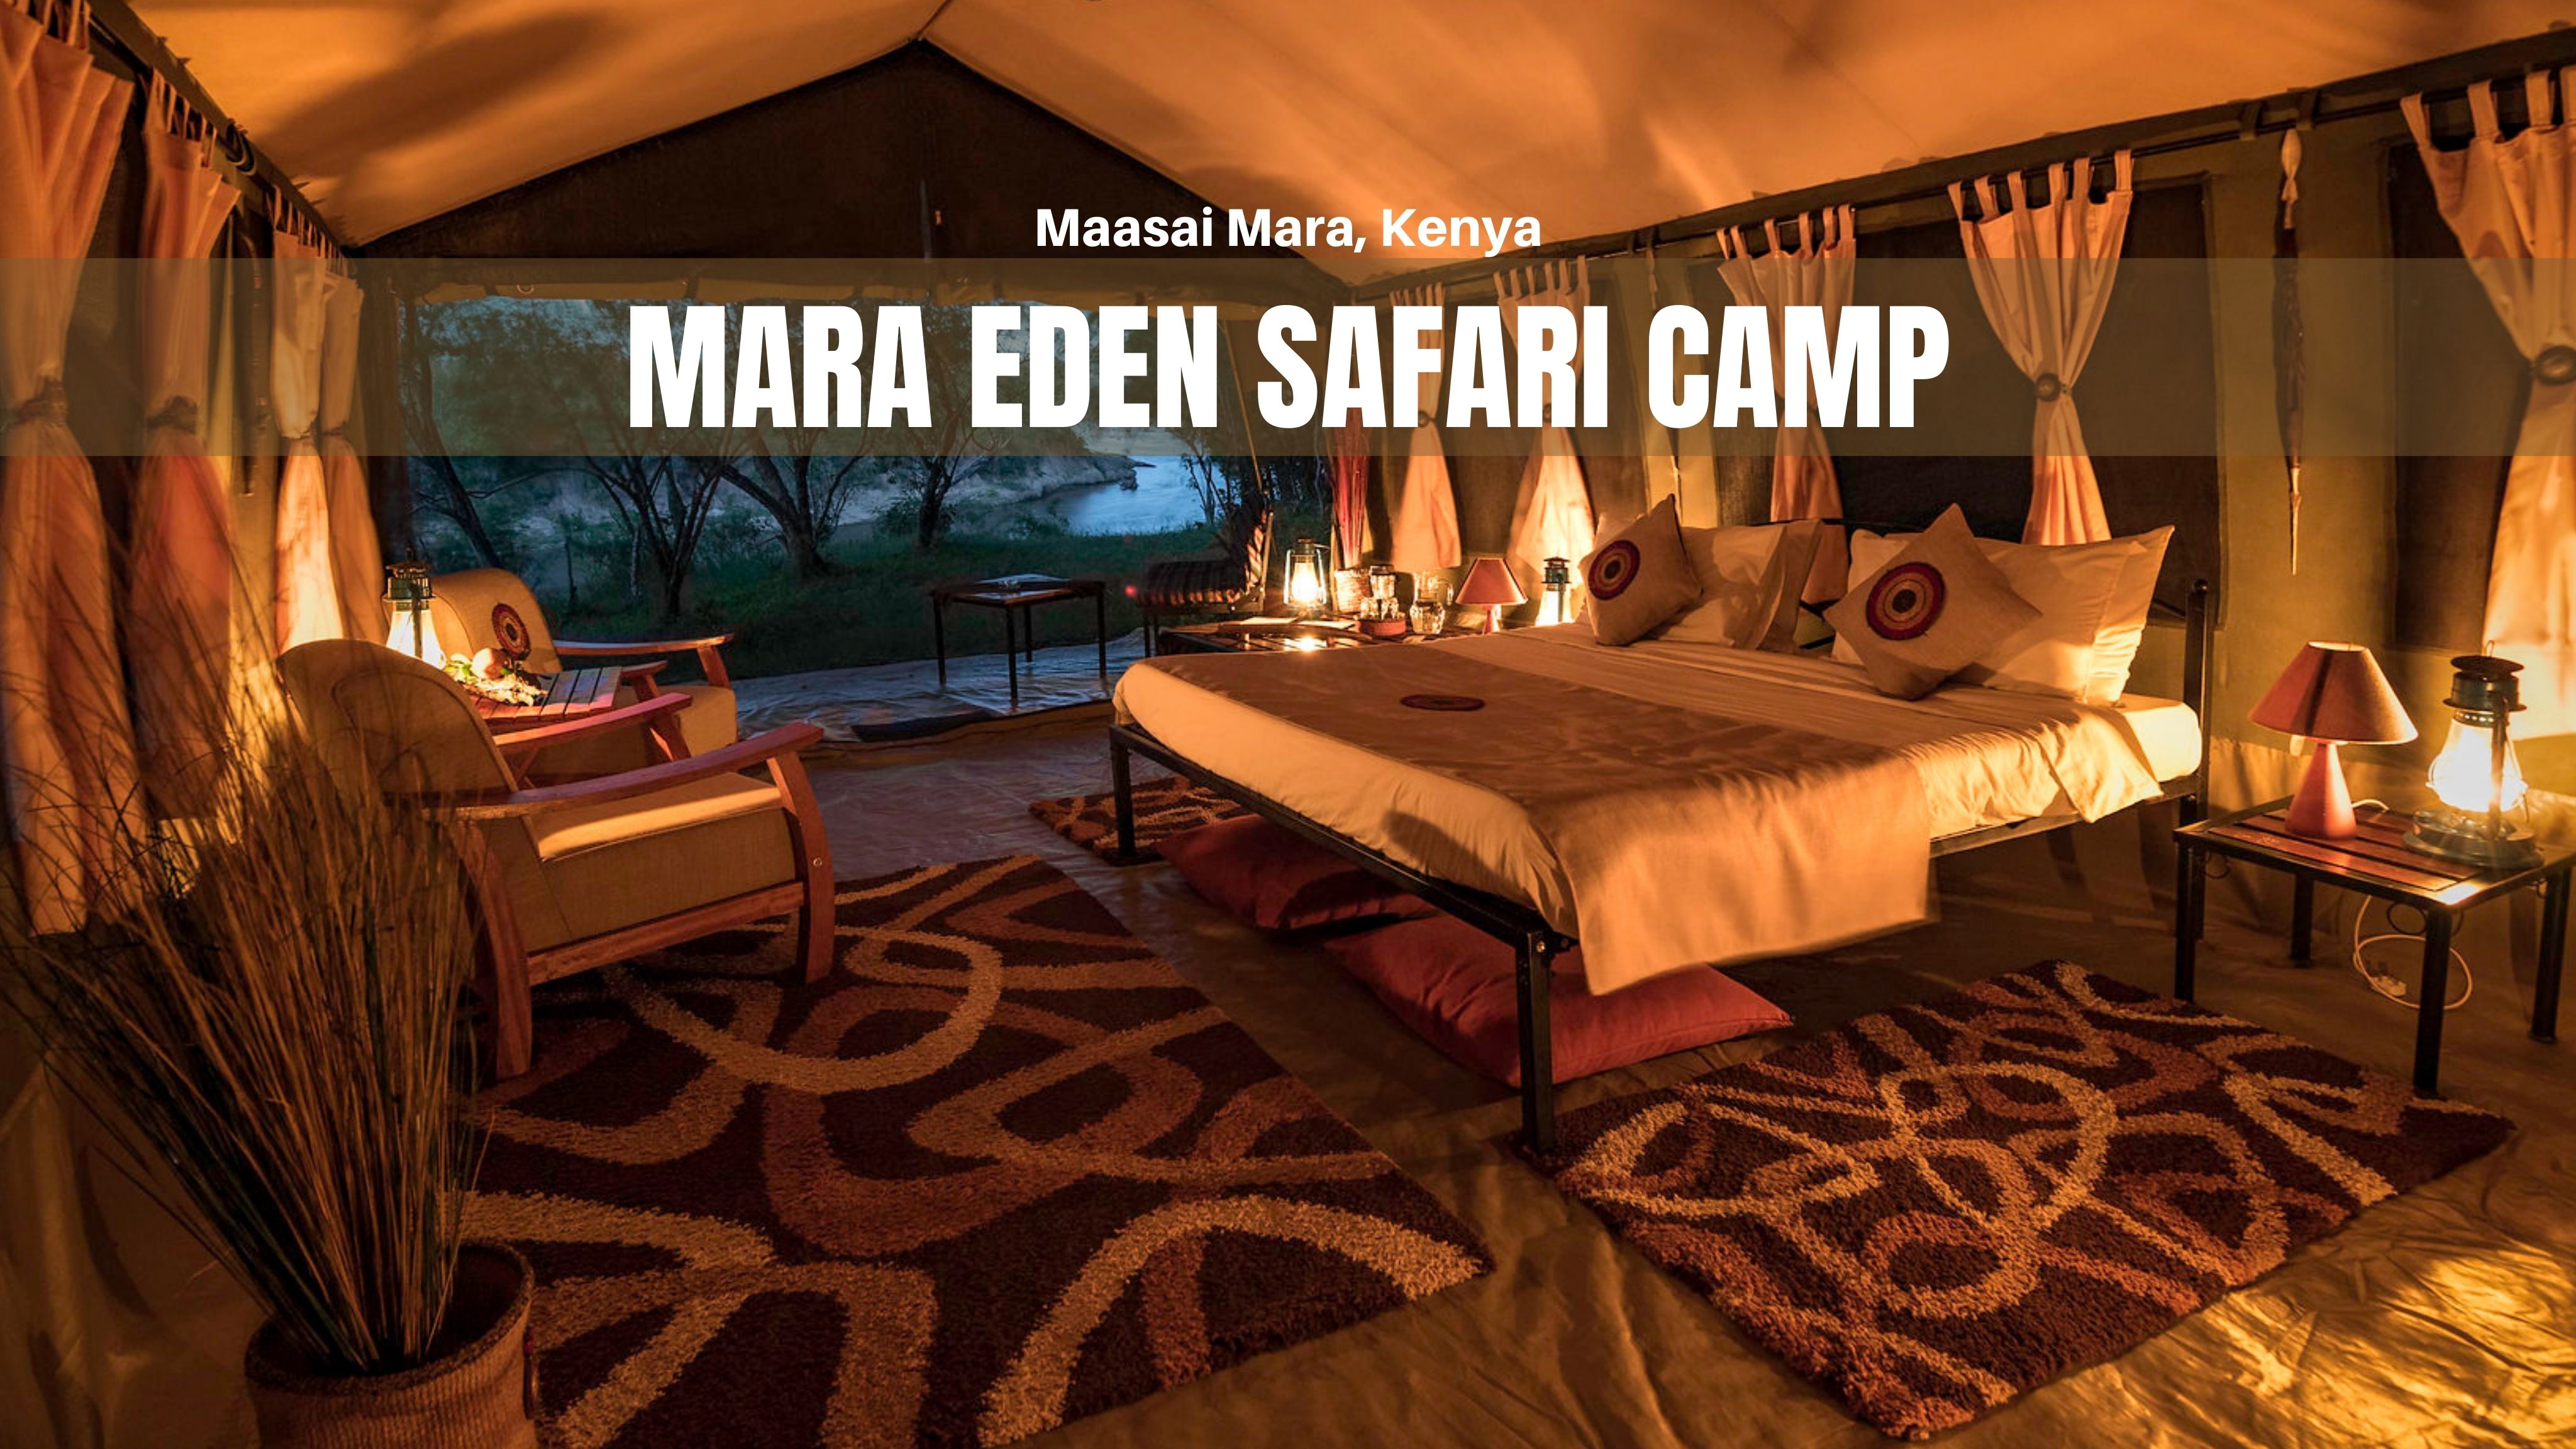 mara eden safari camp email address